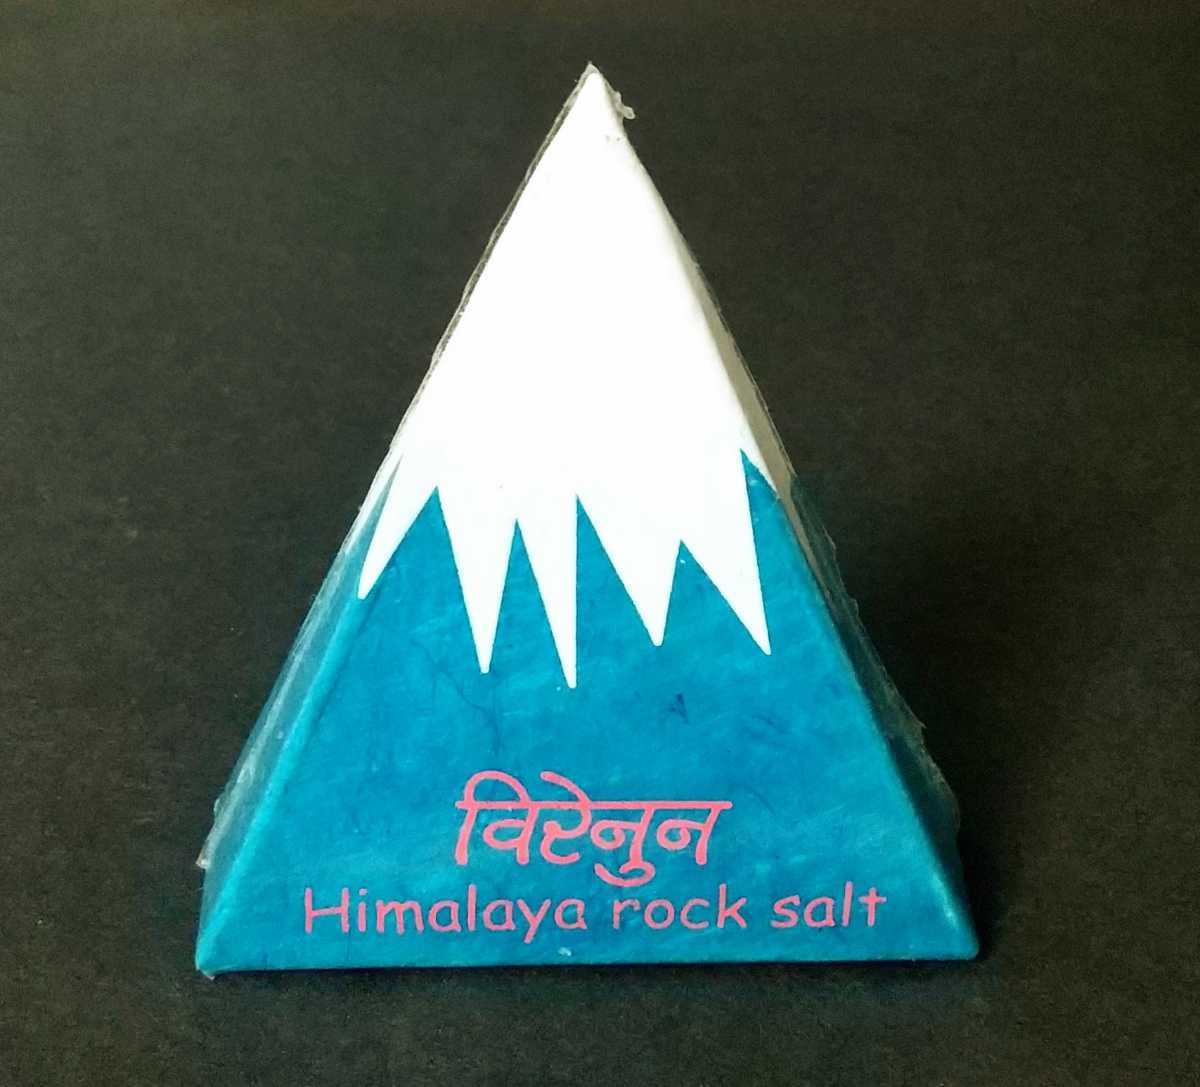 ■ブラックソルト【ヒマラヤ岩塩】ネパール産 約24g ミネラル塩 パウダー状 お料理のかくし味 ヒマラヤの山を表したパッケージ 2019年製造_画像1